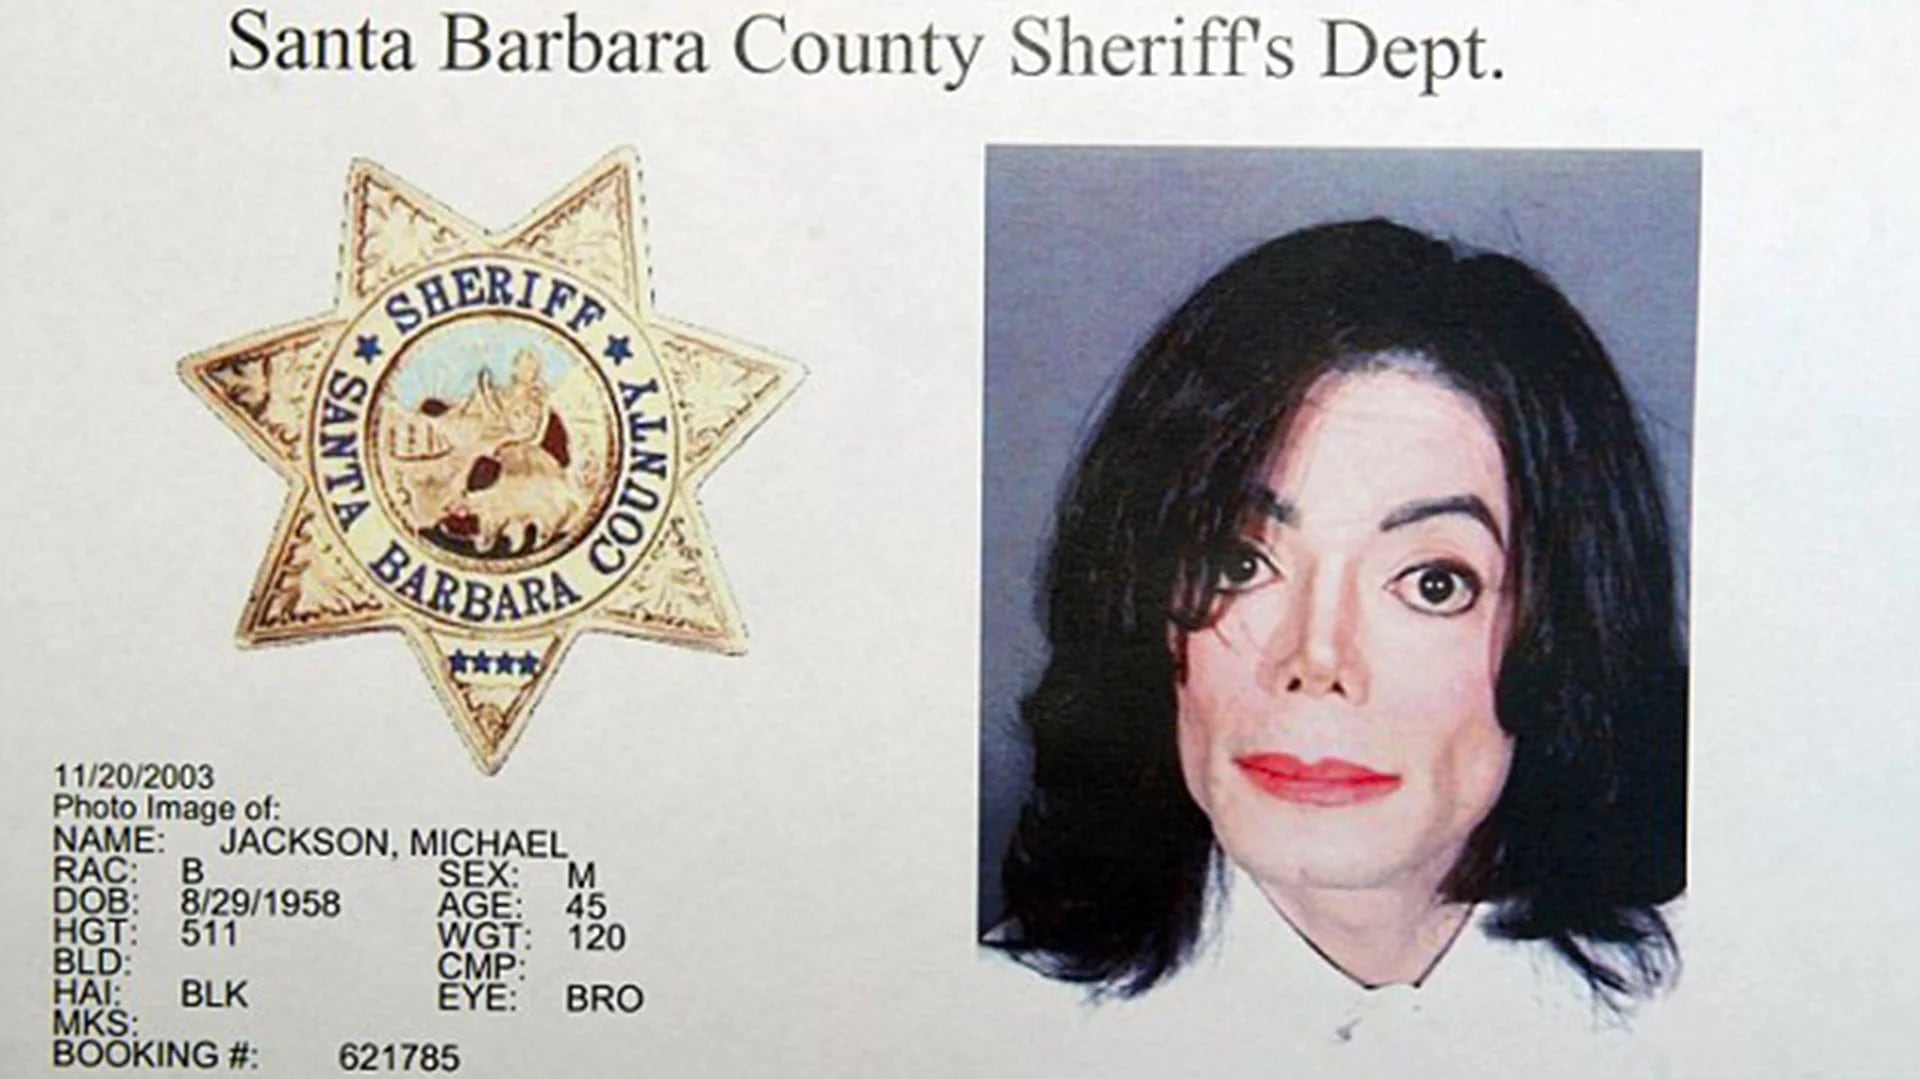 20 de noviembre de 2003. Michael Jackson es registrado por el Departamento del Sheriff del Condado de Santa Bárbara